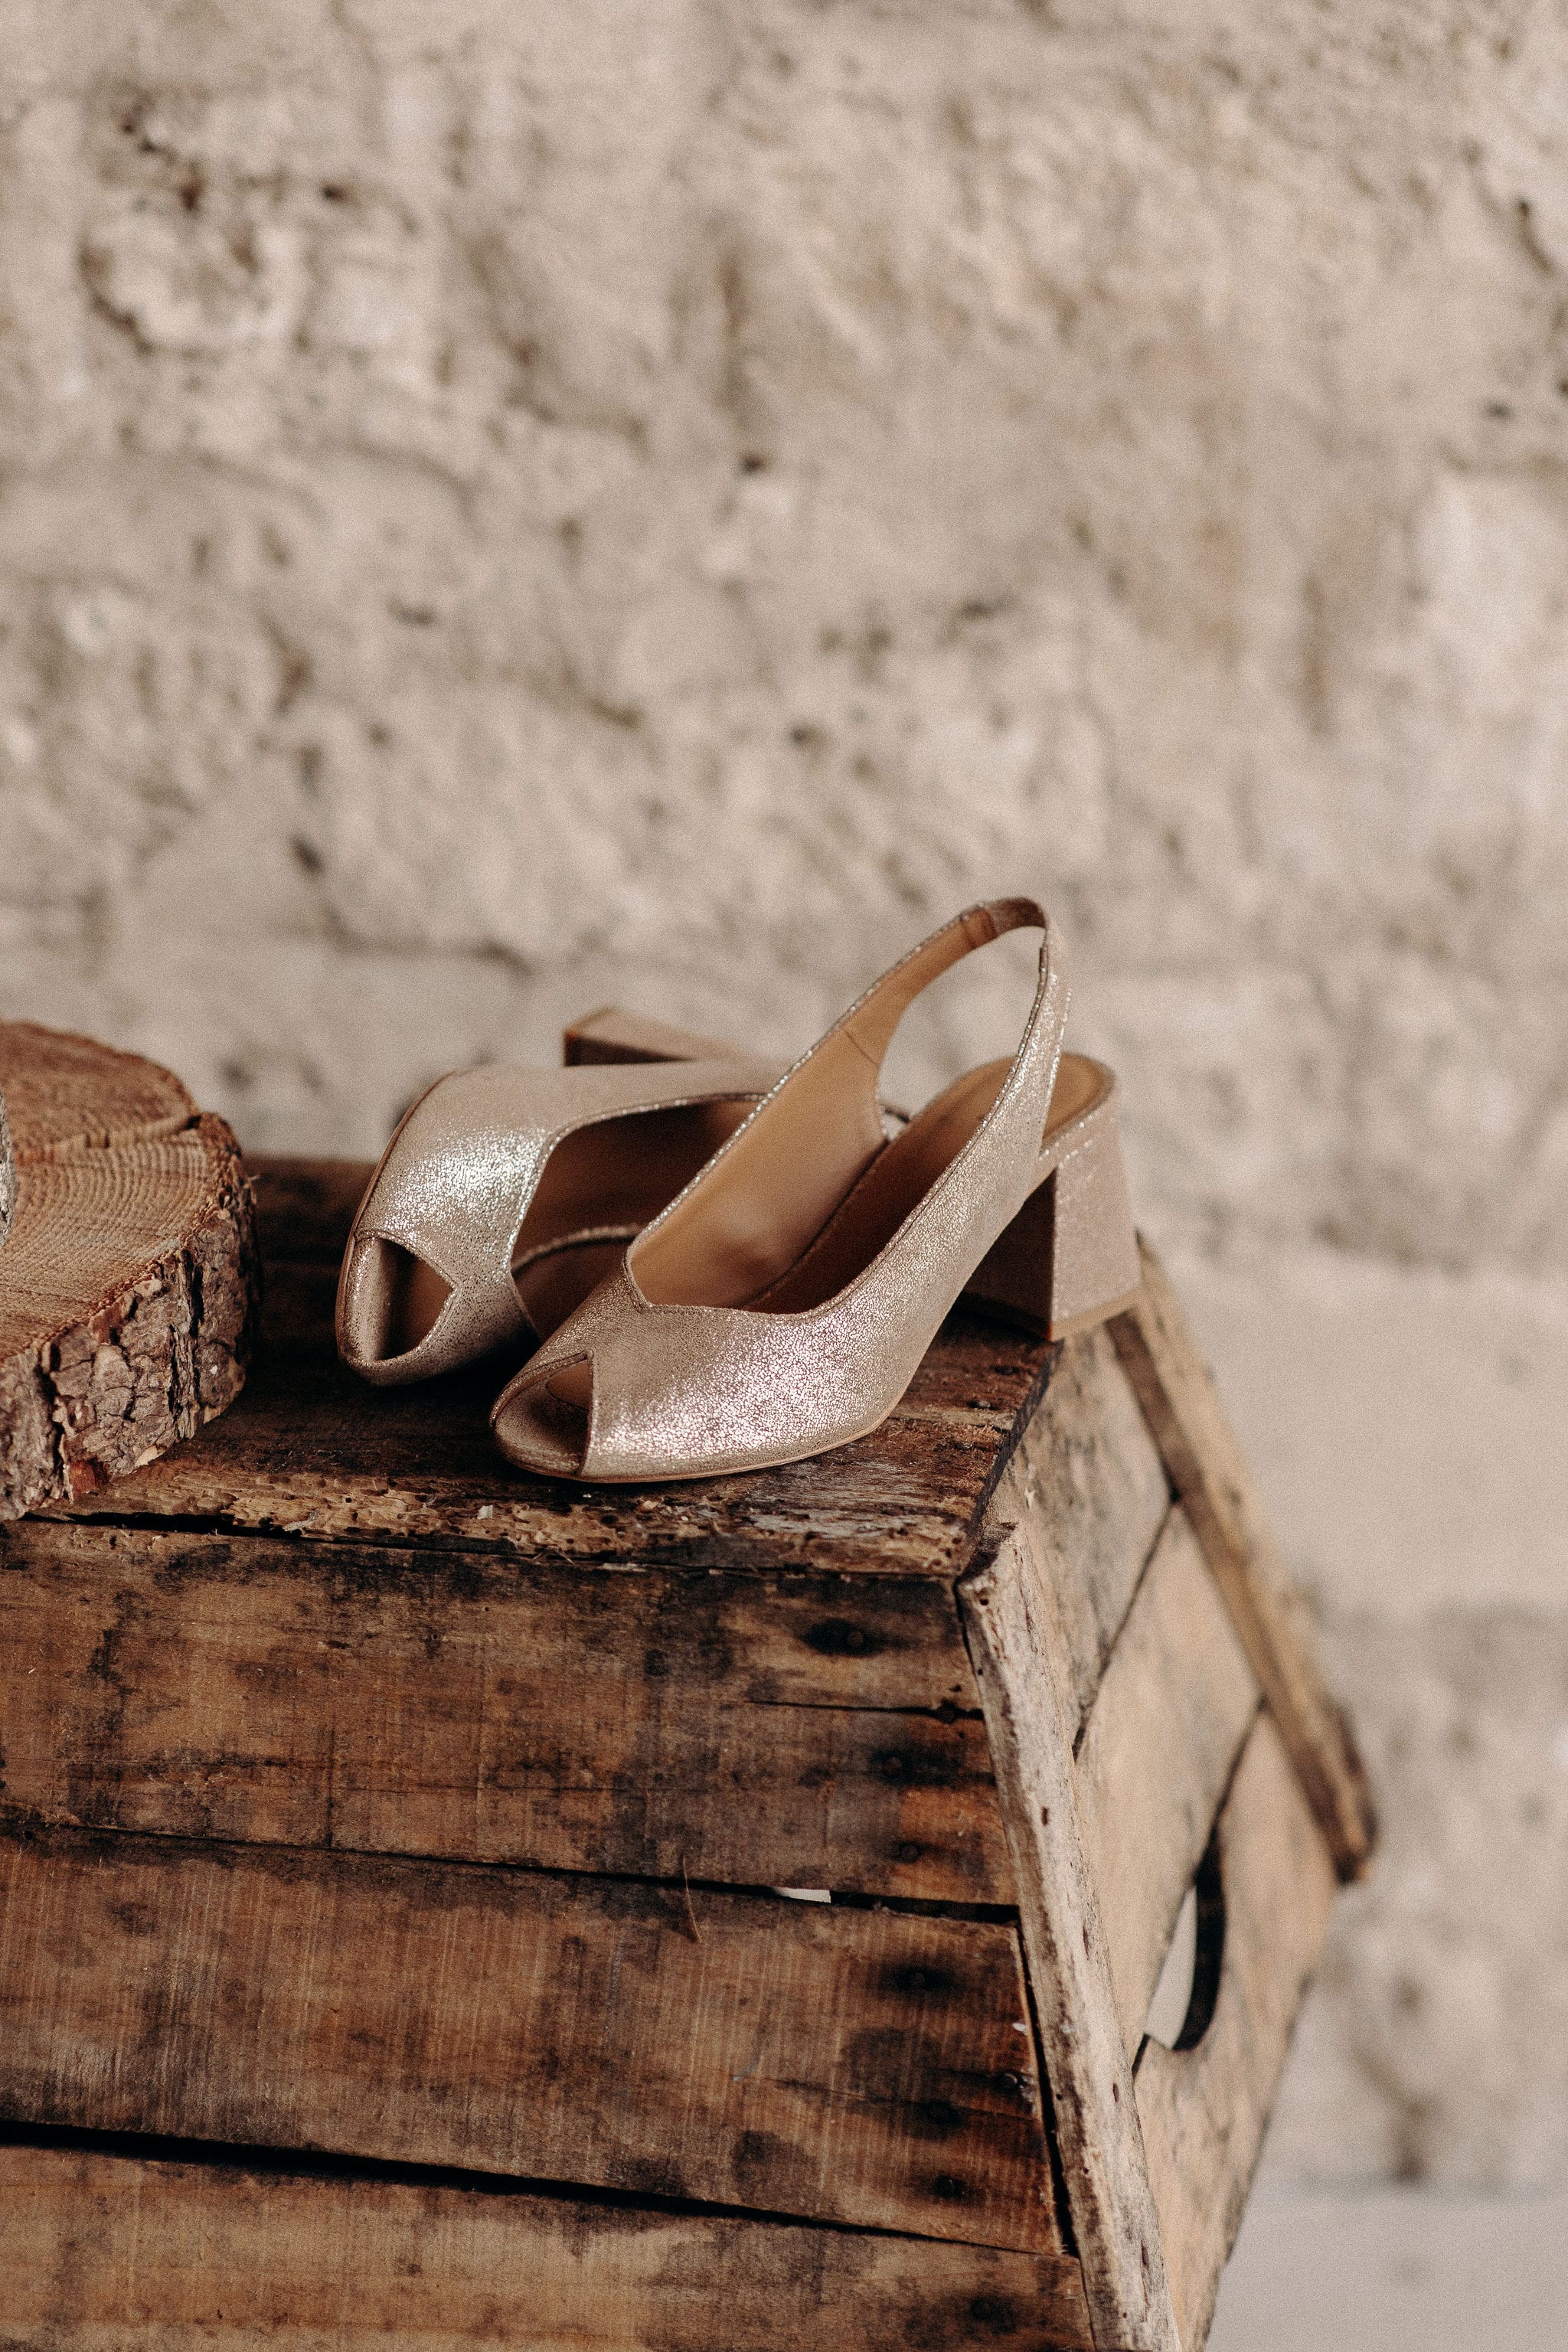 Pied de biche - Chaussures de mariage - Blog mariage : La mariée aux pieds nus